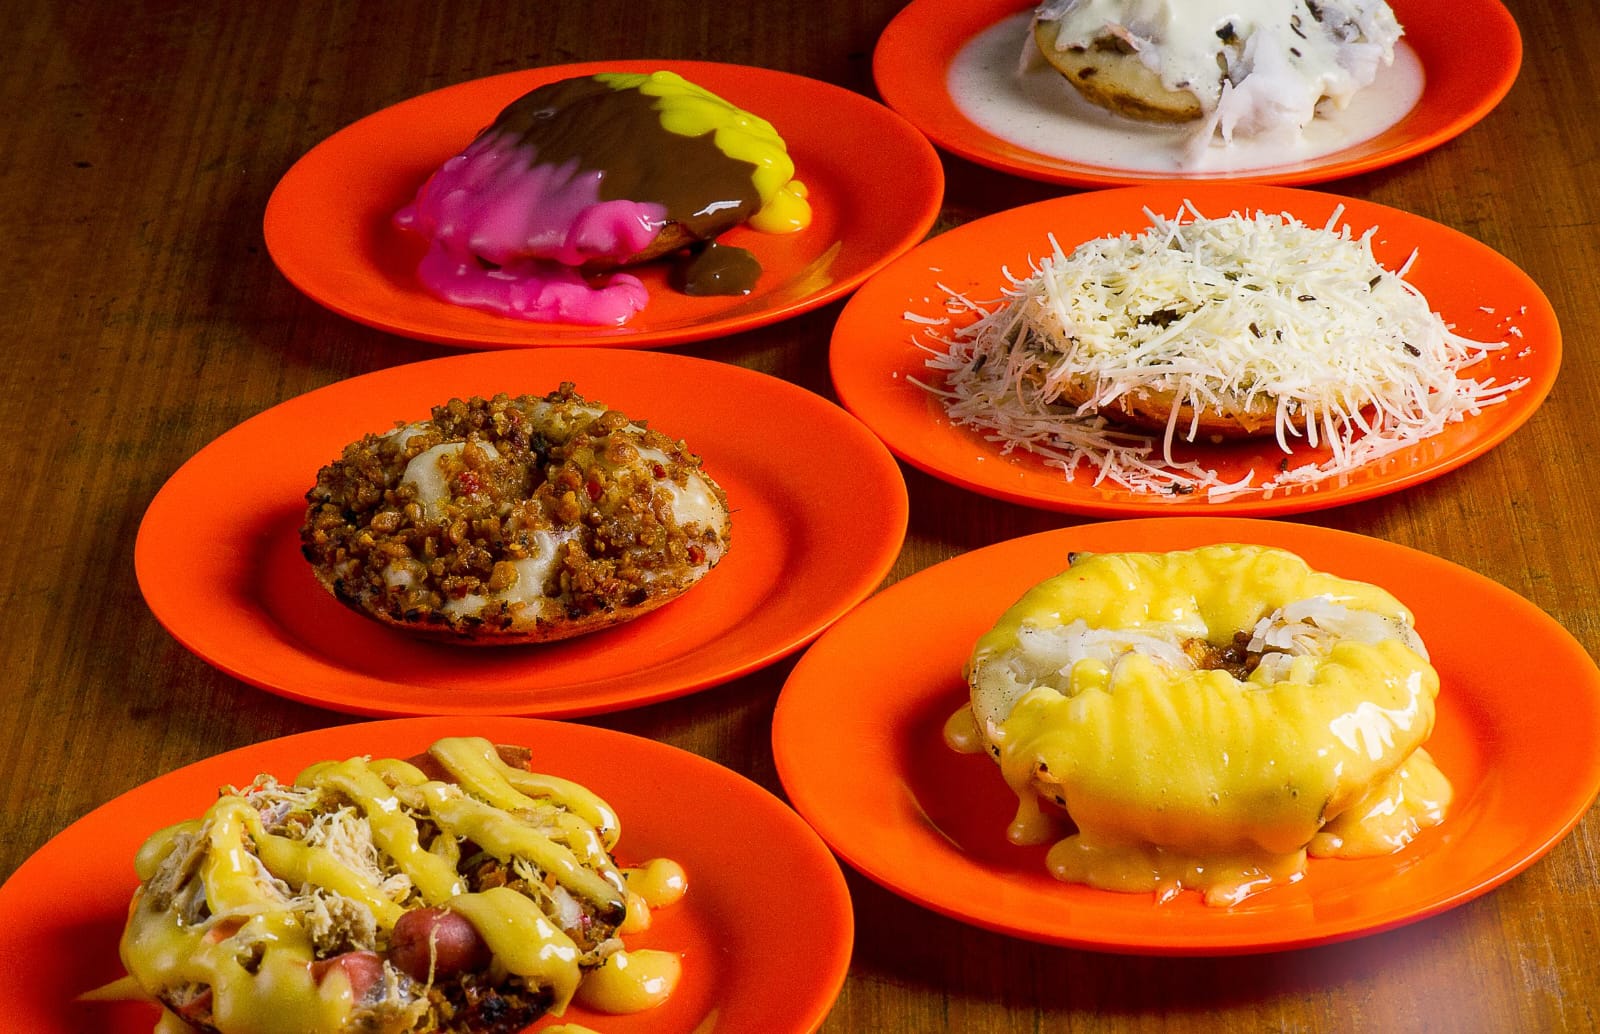 Lezat, Ini 5 Kuliner Legendaris Khas Jawa Barat yang Viral Hingga Sekarang, Salah Satunya Ada dari Tasikmalaya